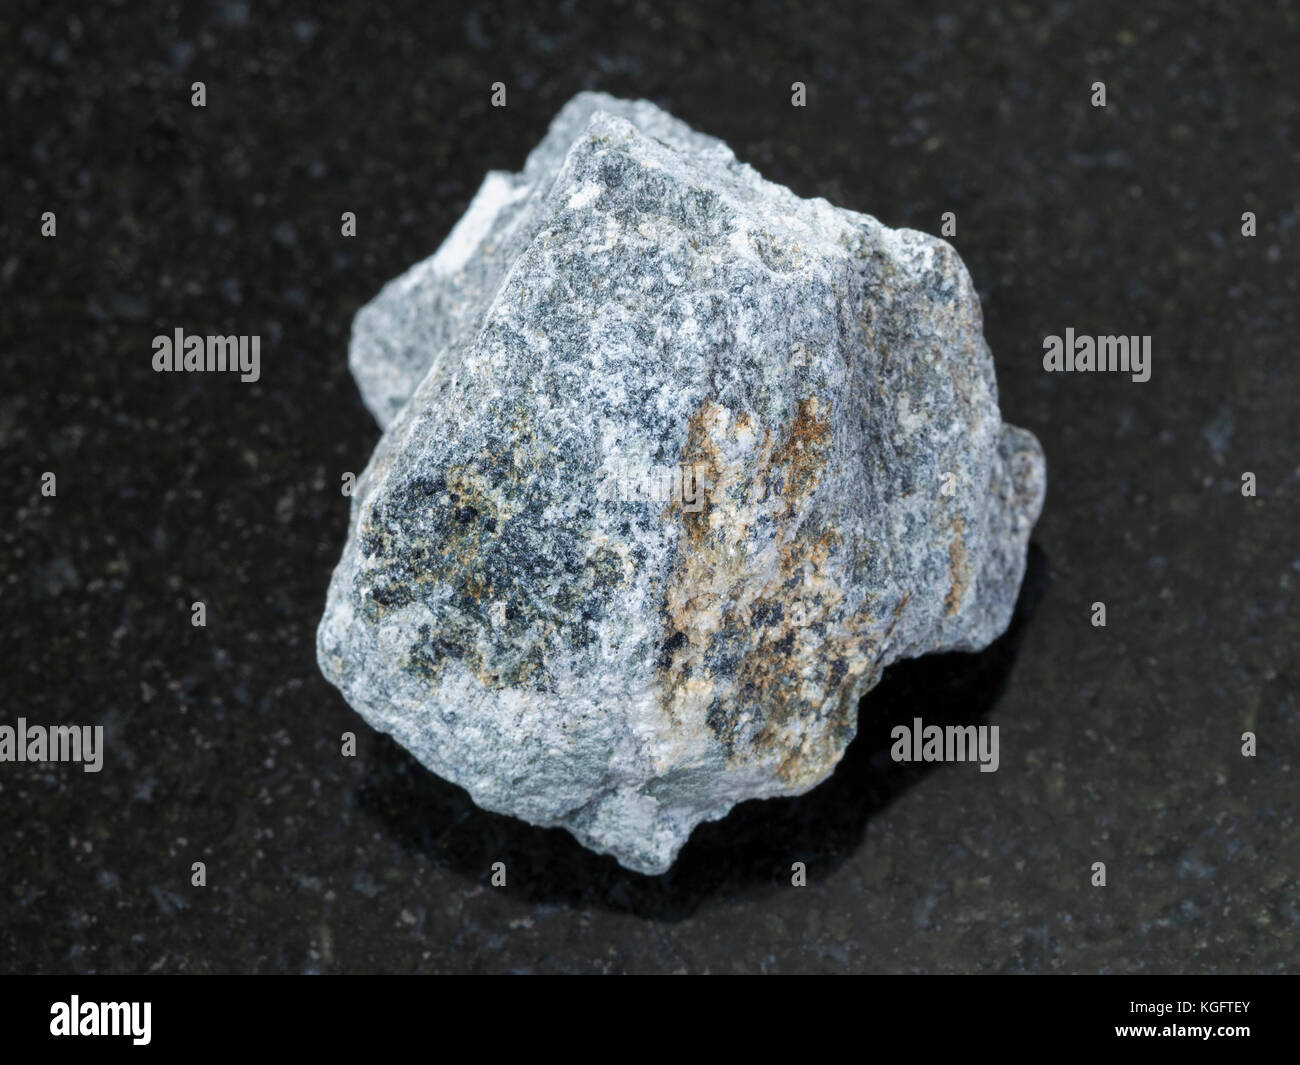 Makroaufnahmen von natürlichen Mineralgestein Muster - grobe Speckstein Stein (talkum - Schiefer) auf dunklem Granit Hintergrund Stockfoto